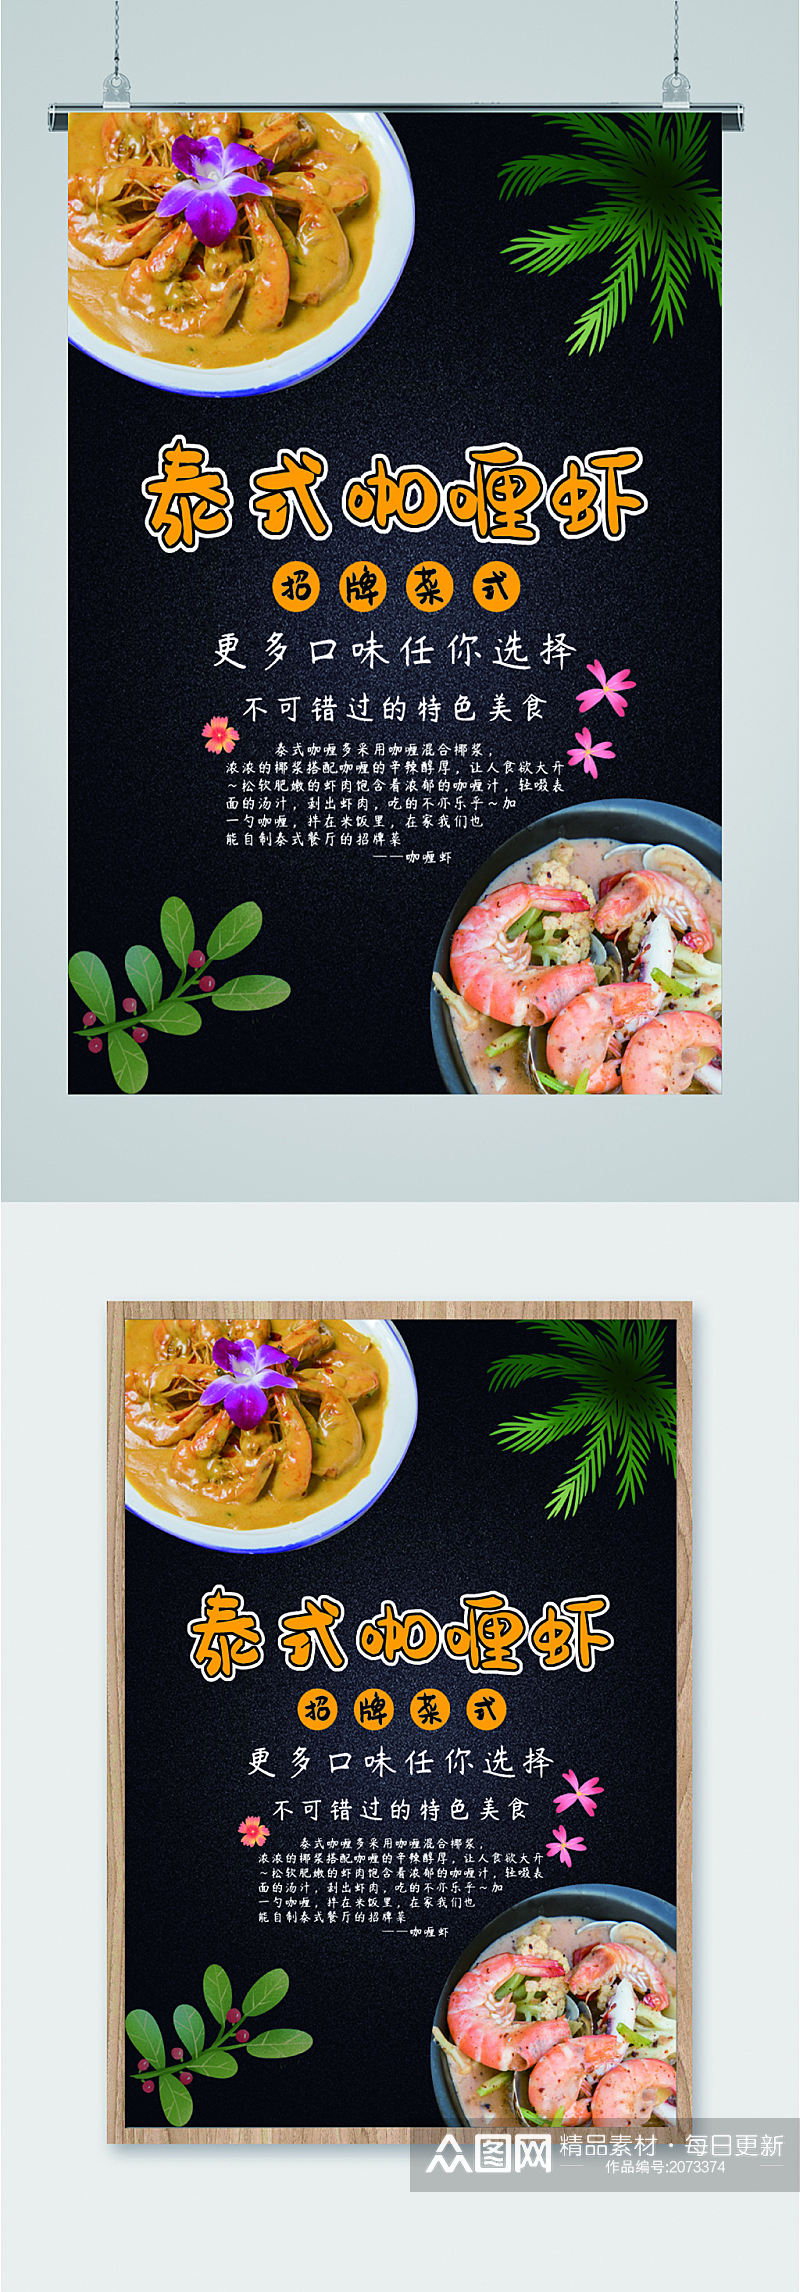 泰式咖喱虾招牌菜美食海报素材